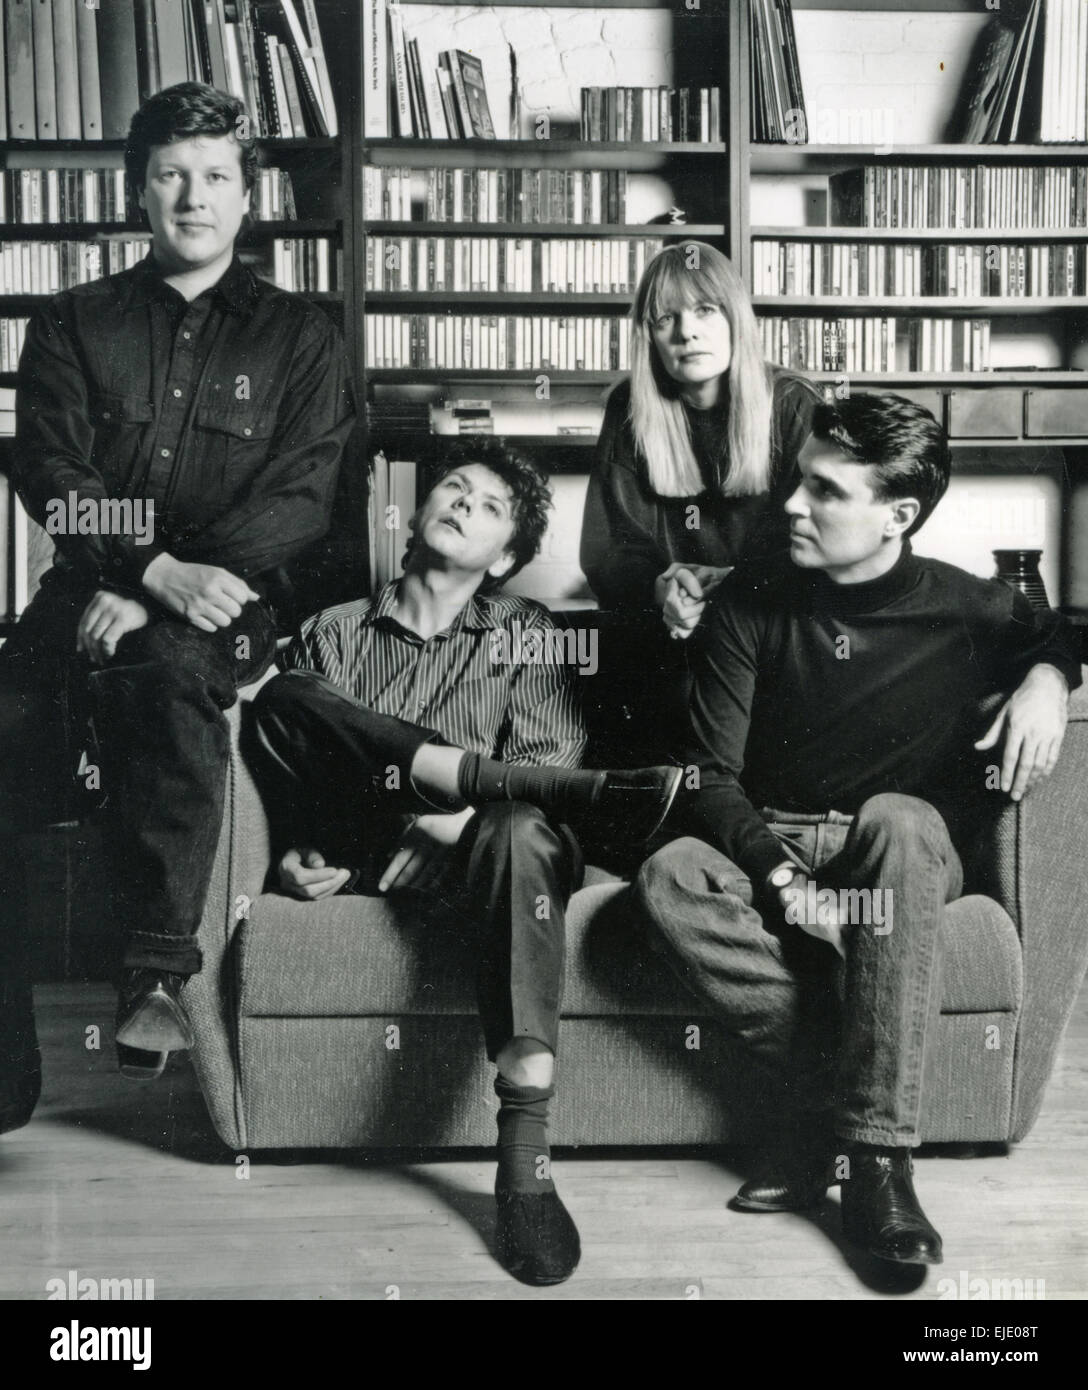 Teste parlanti foto promozionale di noi del gruppo rock nel 1988. Da sinistra:Chris Frantz, Jerry Harrison, Tina Weymouth, David Byrne Foto Stock